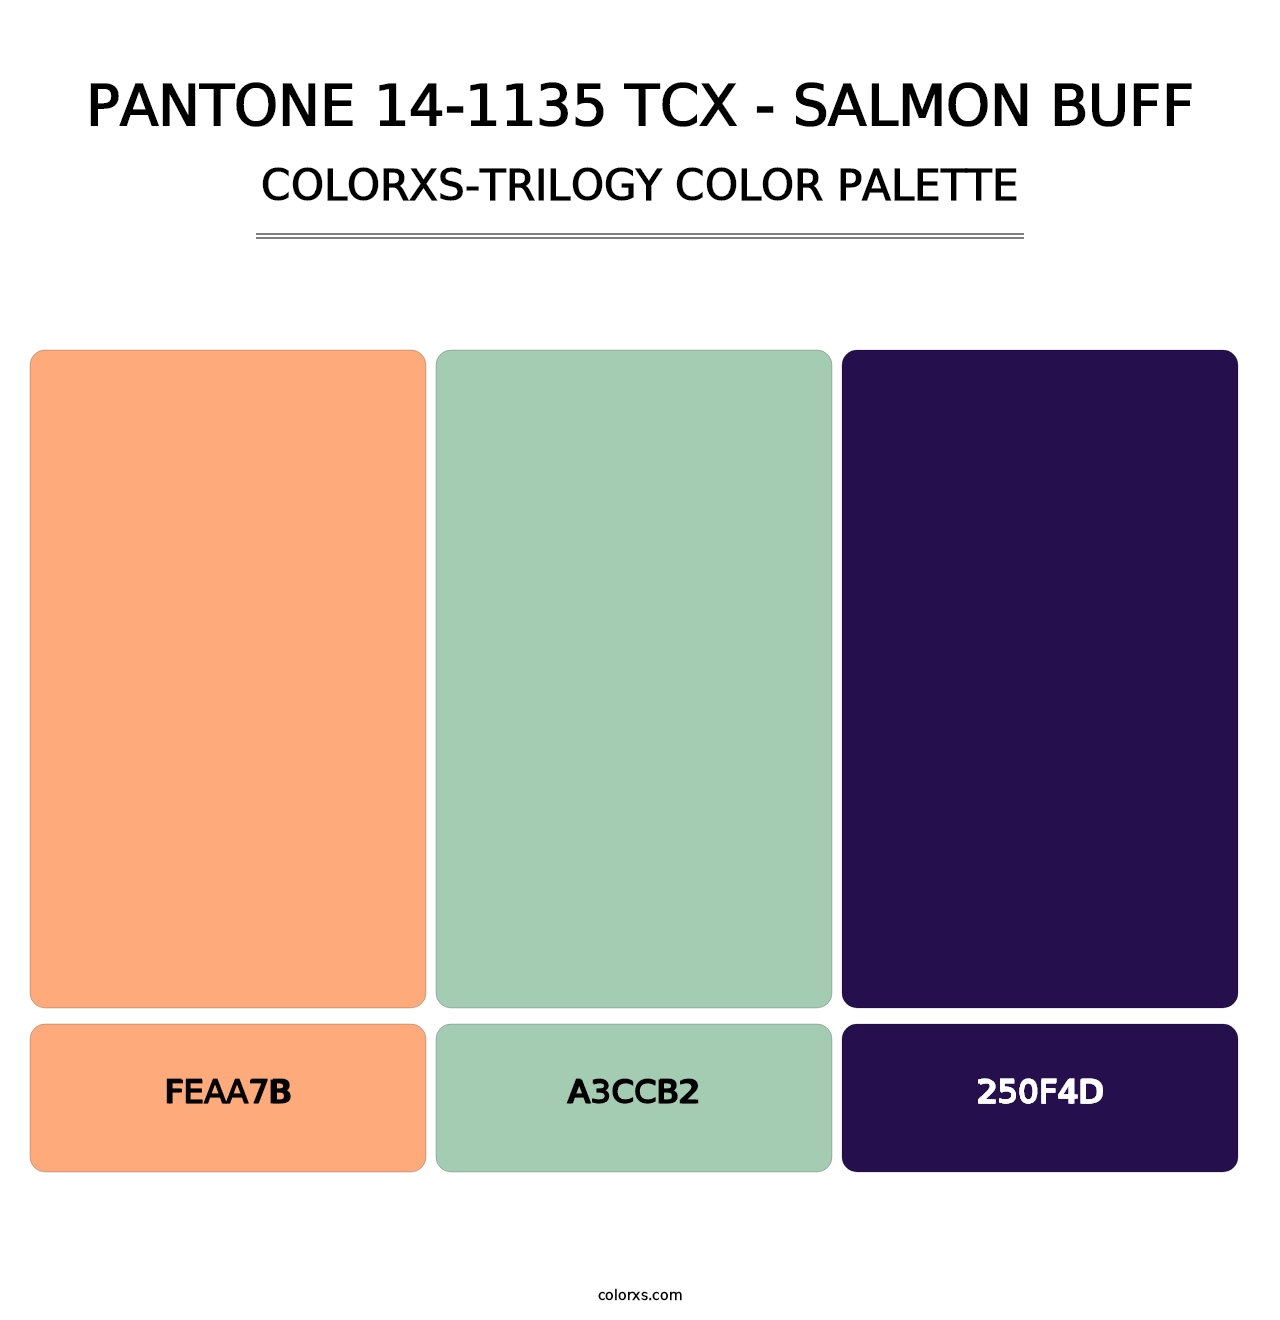 PANTONE 14-1135 TCX - Salmon Buff - Colorxs Trilogy Palette